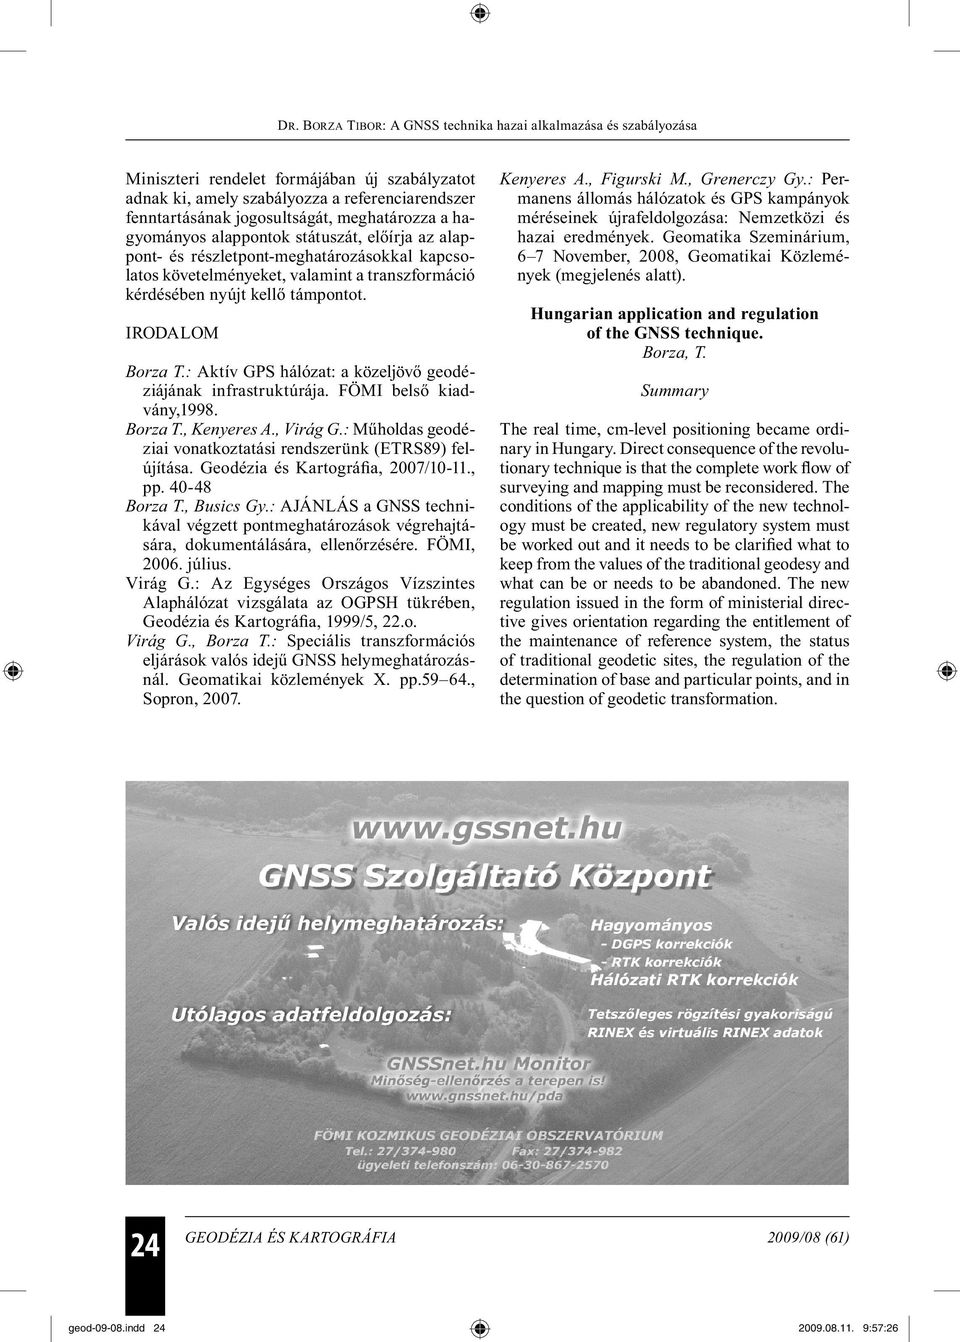 FÖMI belső kiadvány,1998. Borza T., Kenyeres A., Virág G.: Műholdas geodéziai vonatkoztatási rendszerünk (ETRS89) felújítása. Geodézia és Kartográfia, 2007/10-11., pp. 40-48 Borza T., Busics Gy.